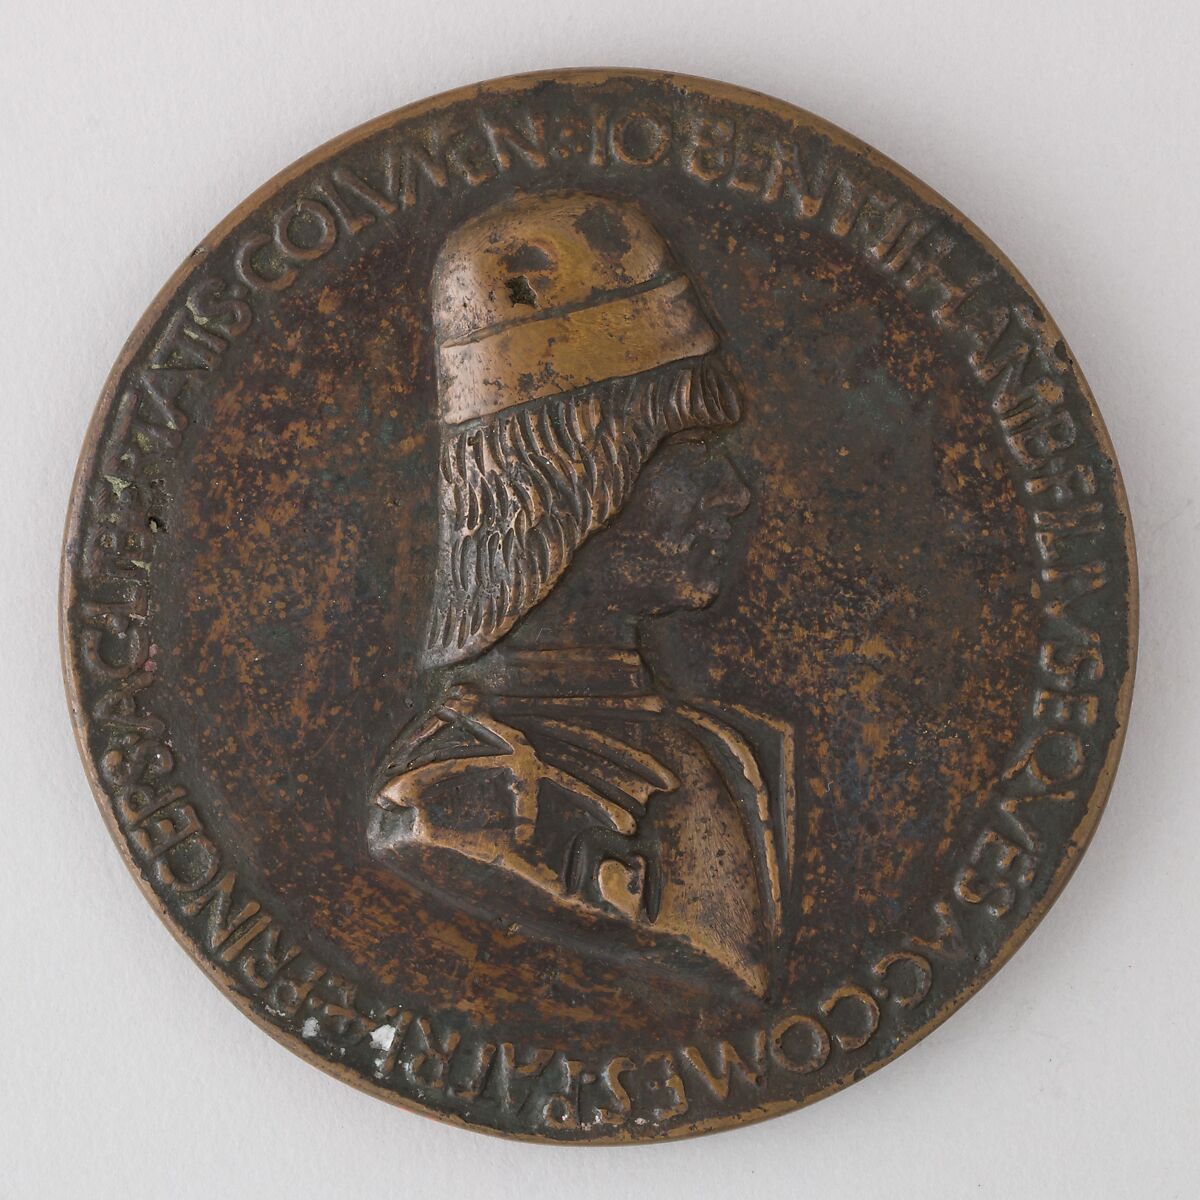 Medal Showing Giovanni Bentivoglio II, Bronze, Italian 